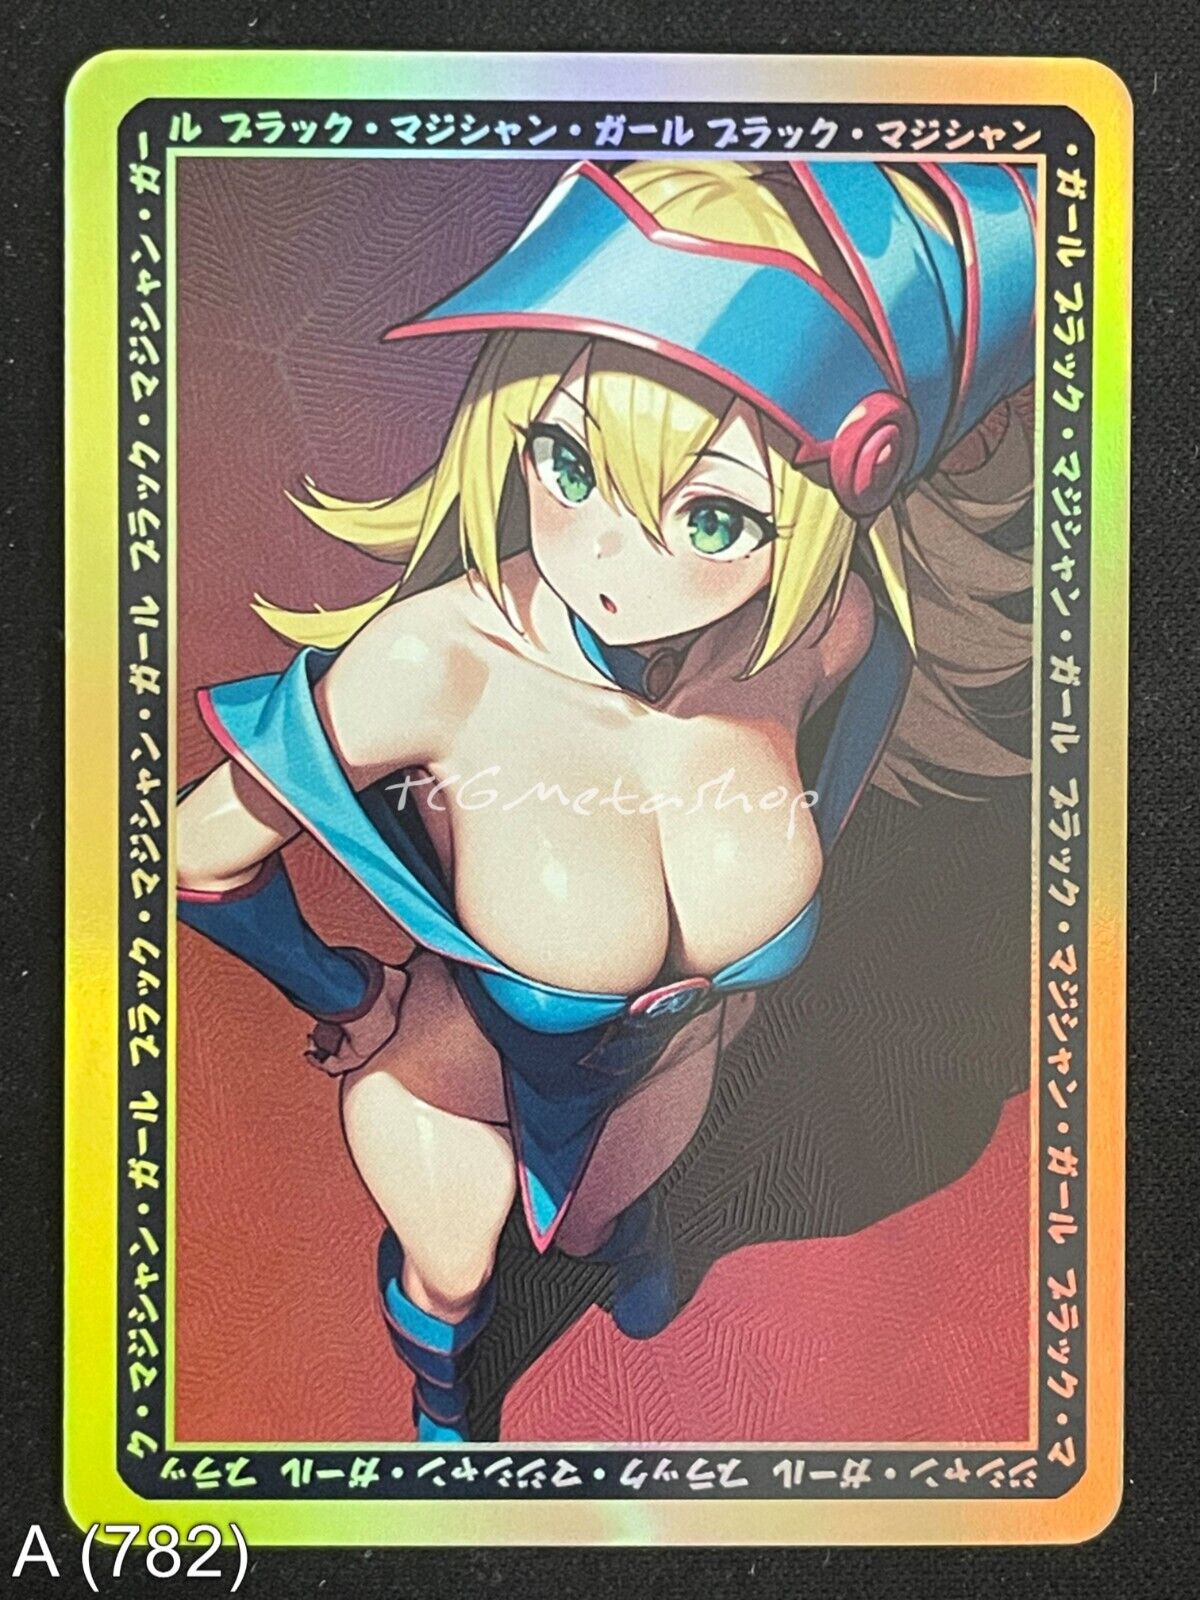 🔥 A 782 Dark Magician Girl Yu-Gi-Oh! Goddess Story Anime Waifu Card ACG 🔥